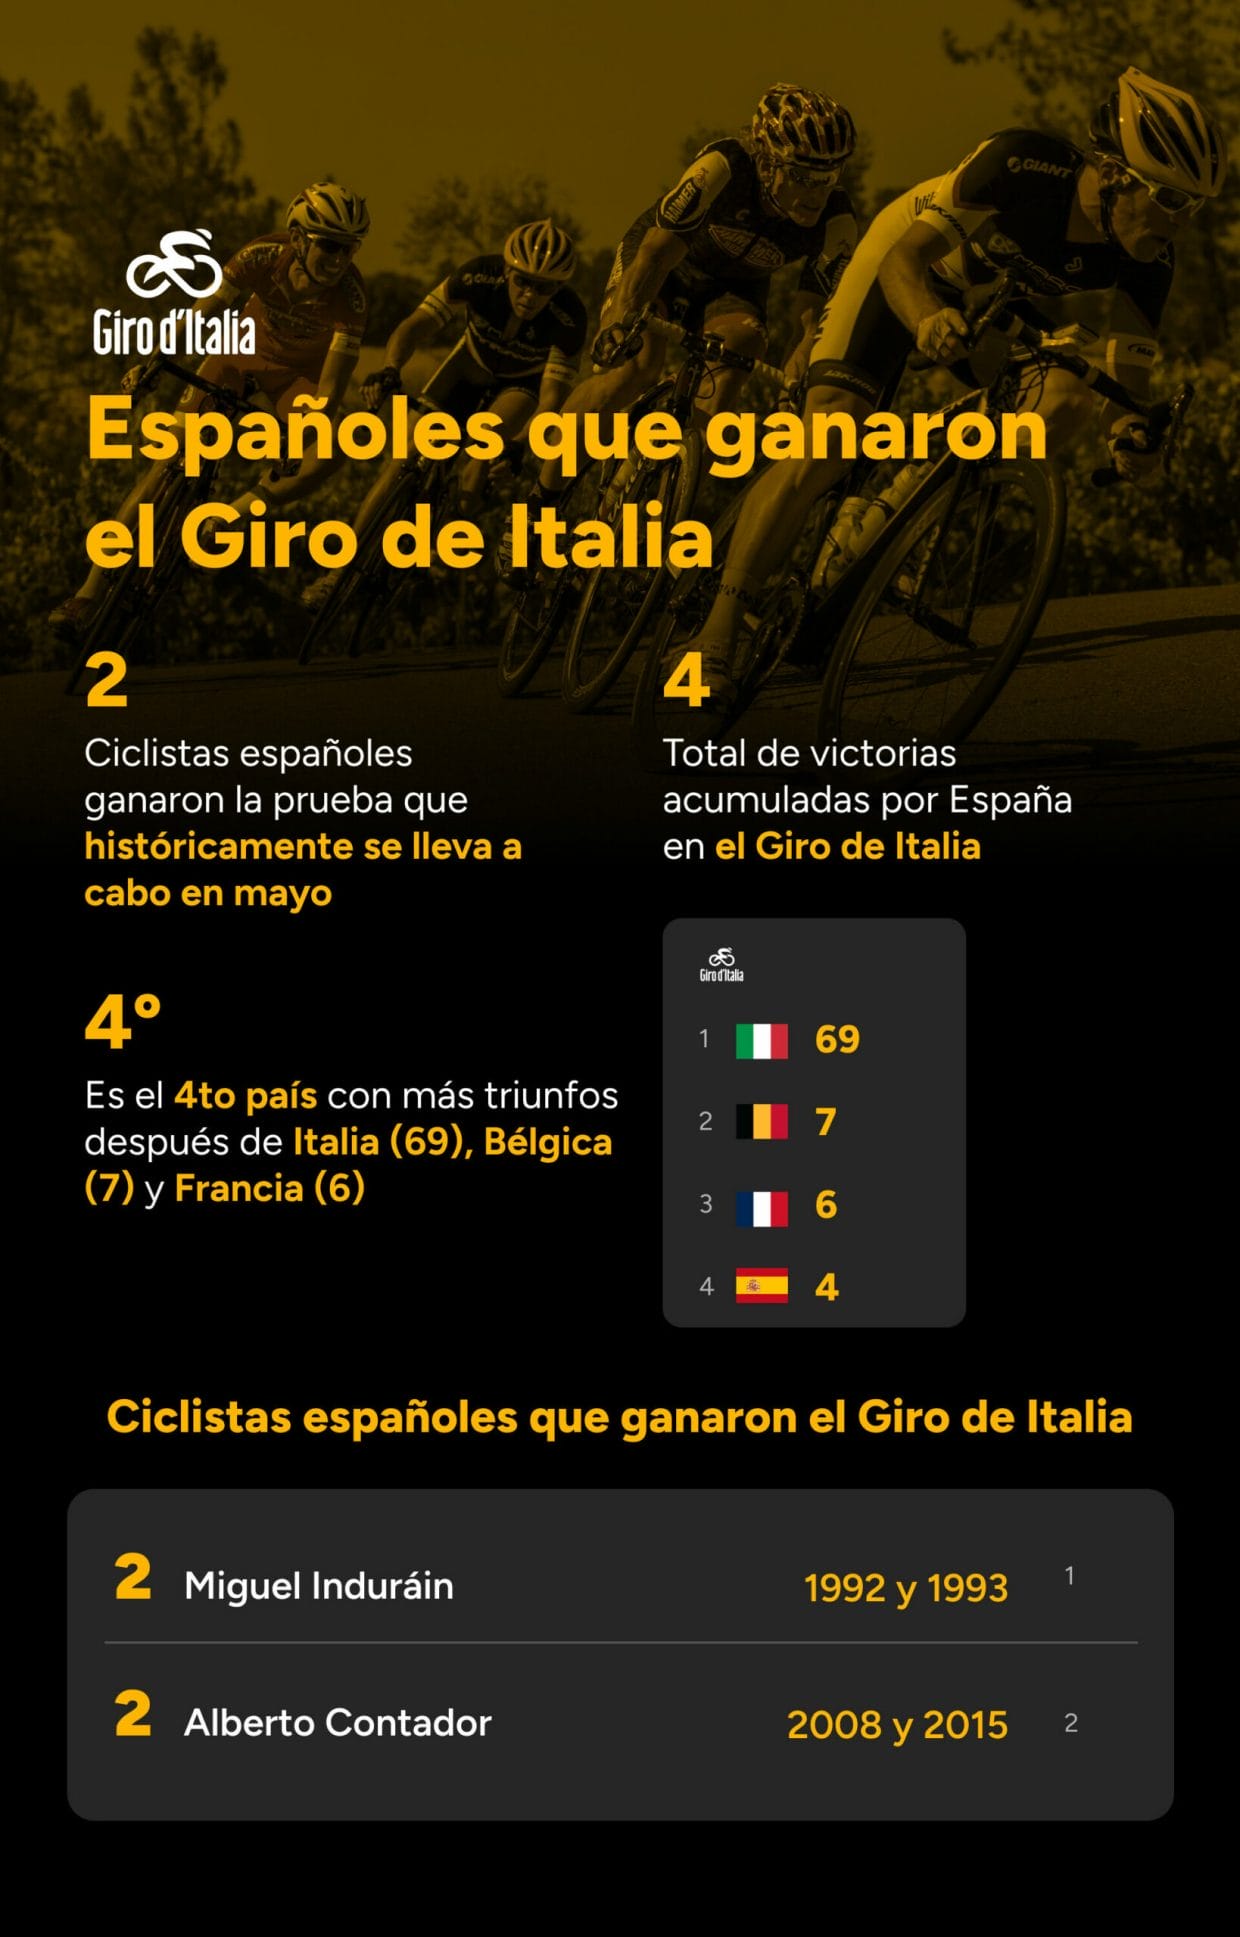 Ciclistas españoles que ganaron Grandes Vueltas